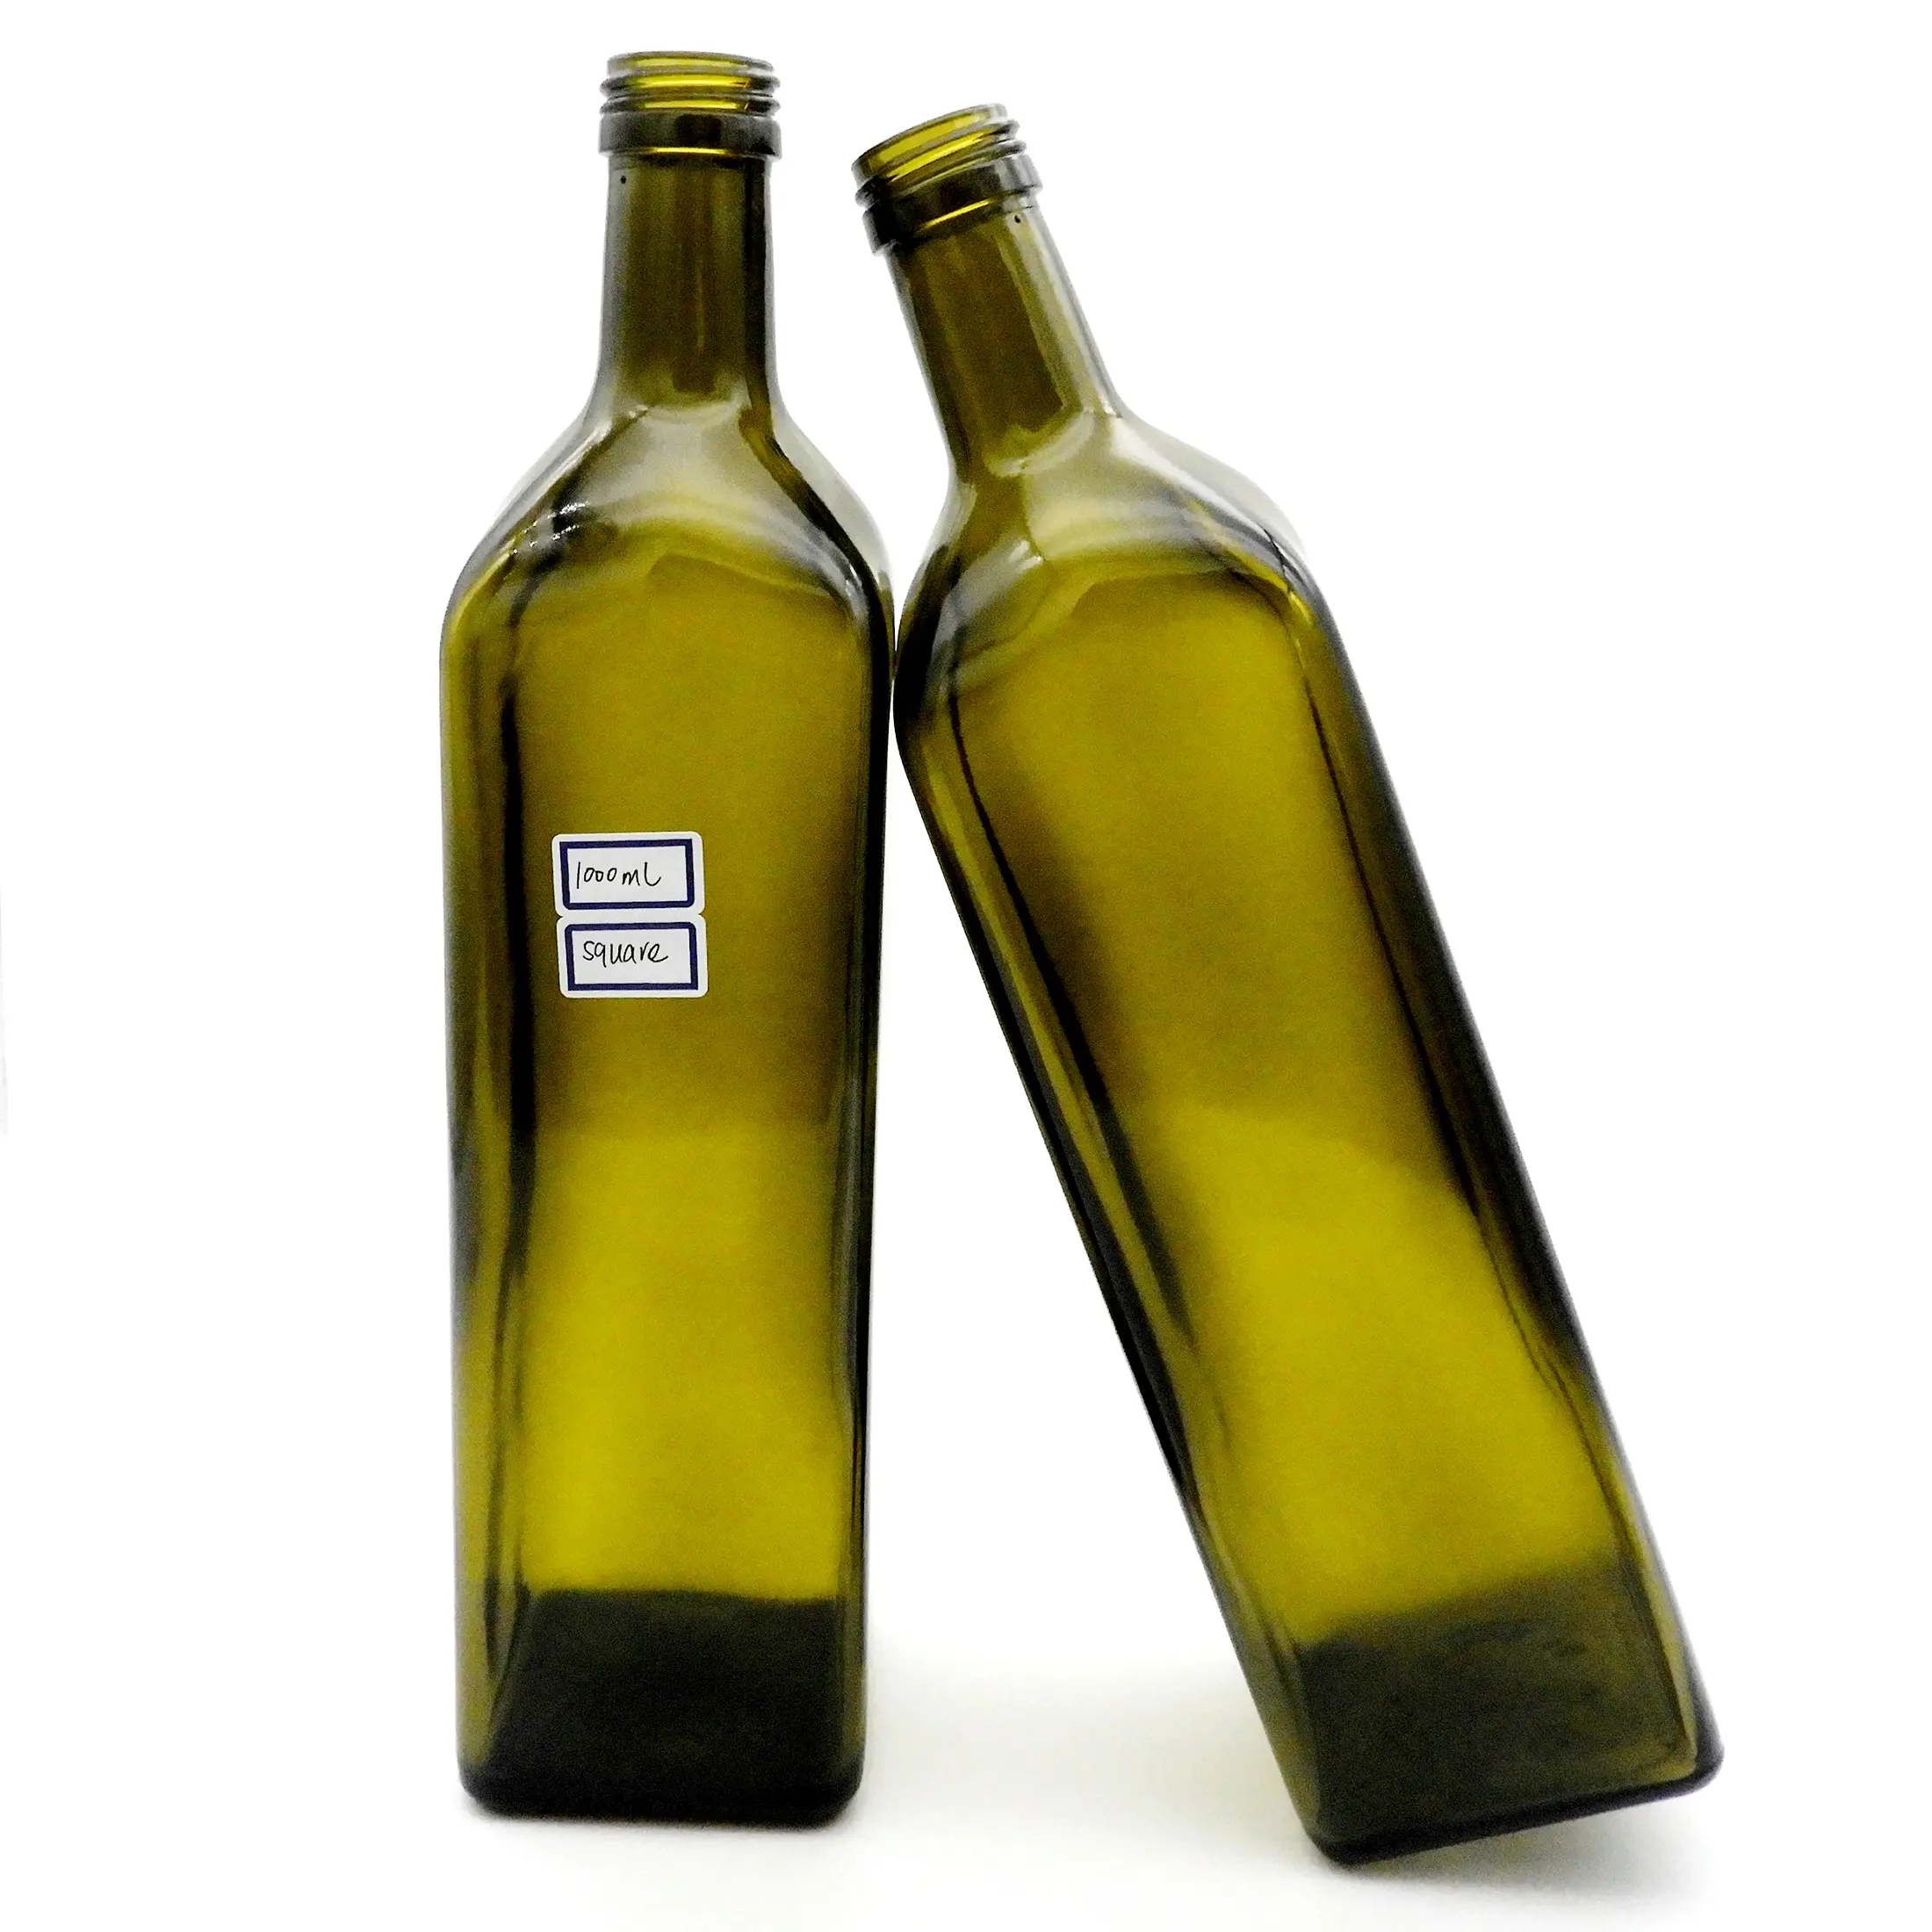 زجاجة زيت زيتون زجاجية 1000 مللي من المصنع زجاجة زيت زيتون ماراسكا بسعة لتر واحد بسعر الجملة